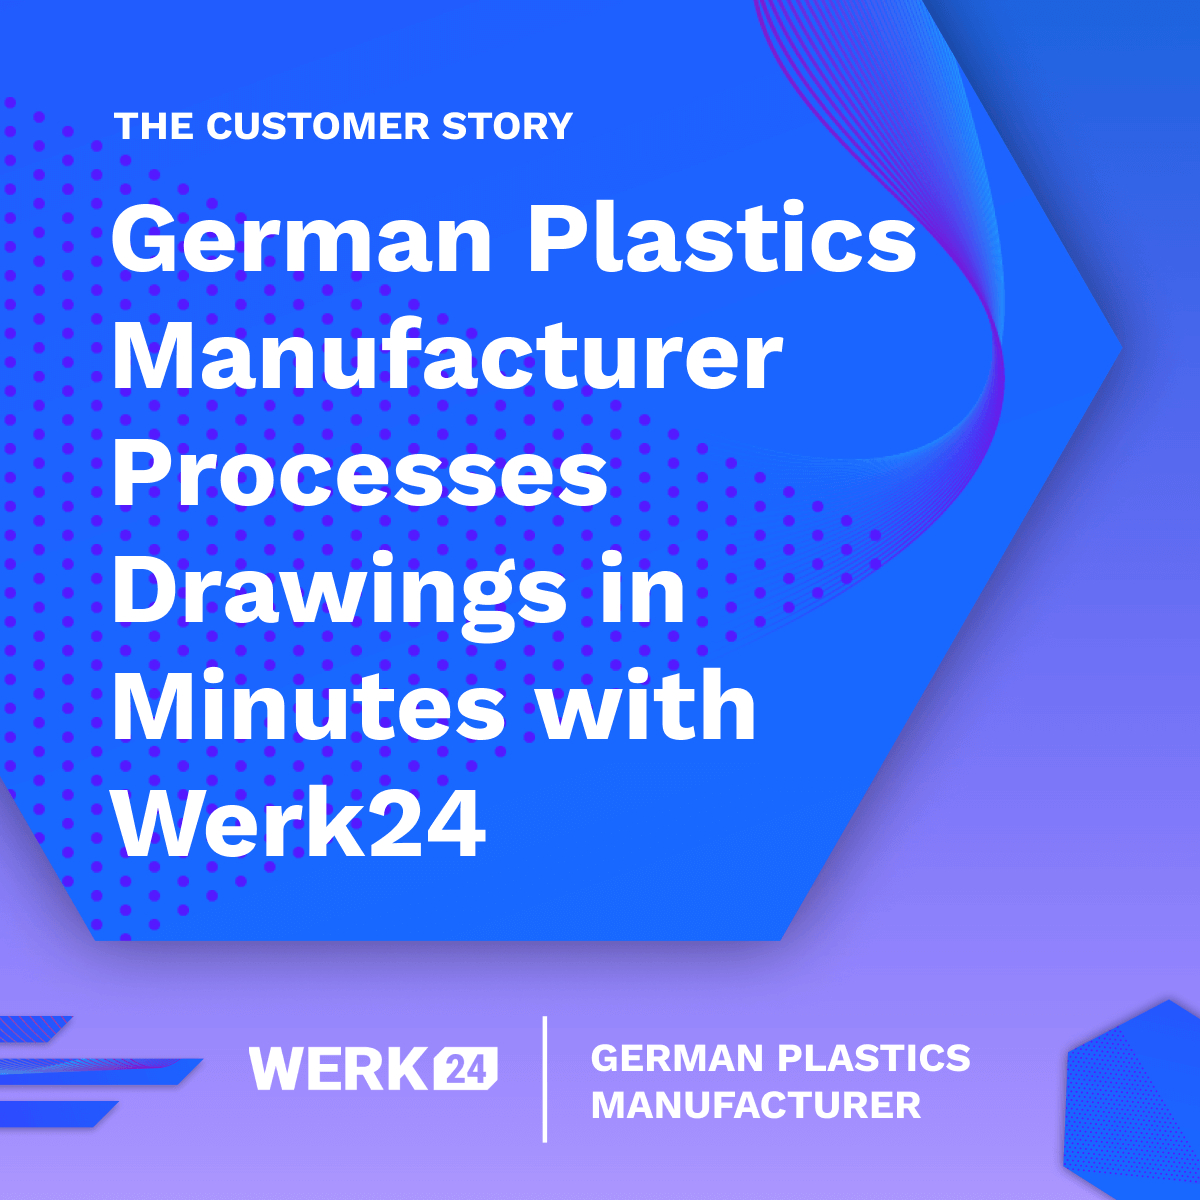 Un fabricante de plásticos alemán procesa dibujos en minutos con Werk24